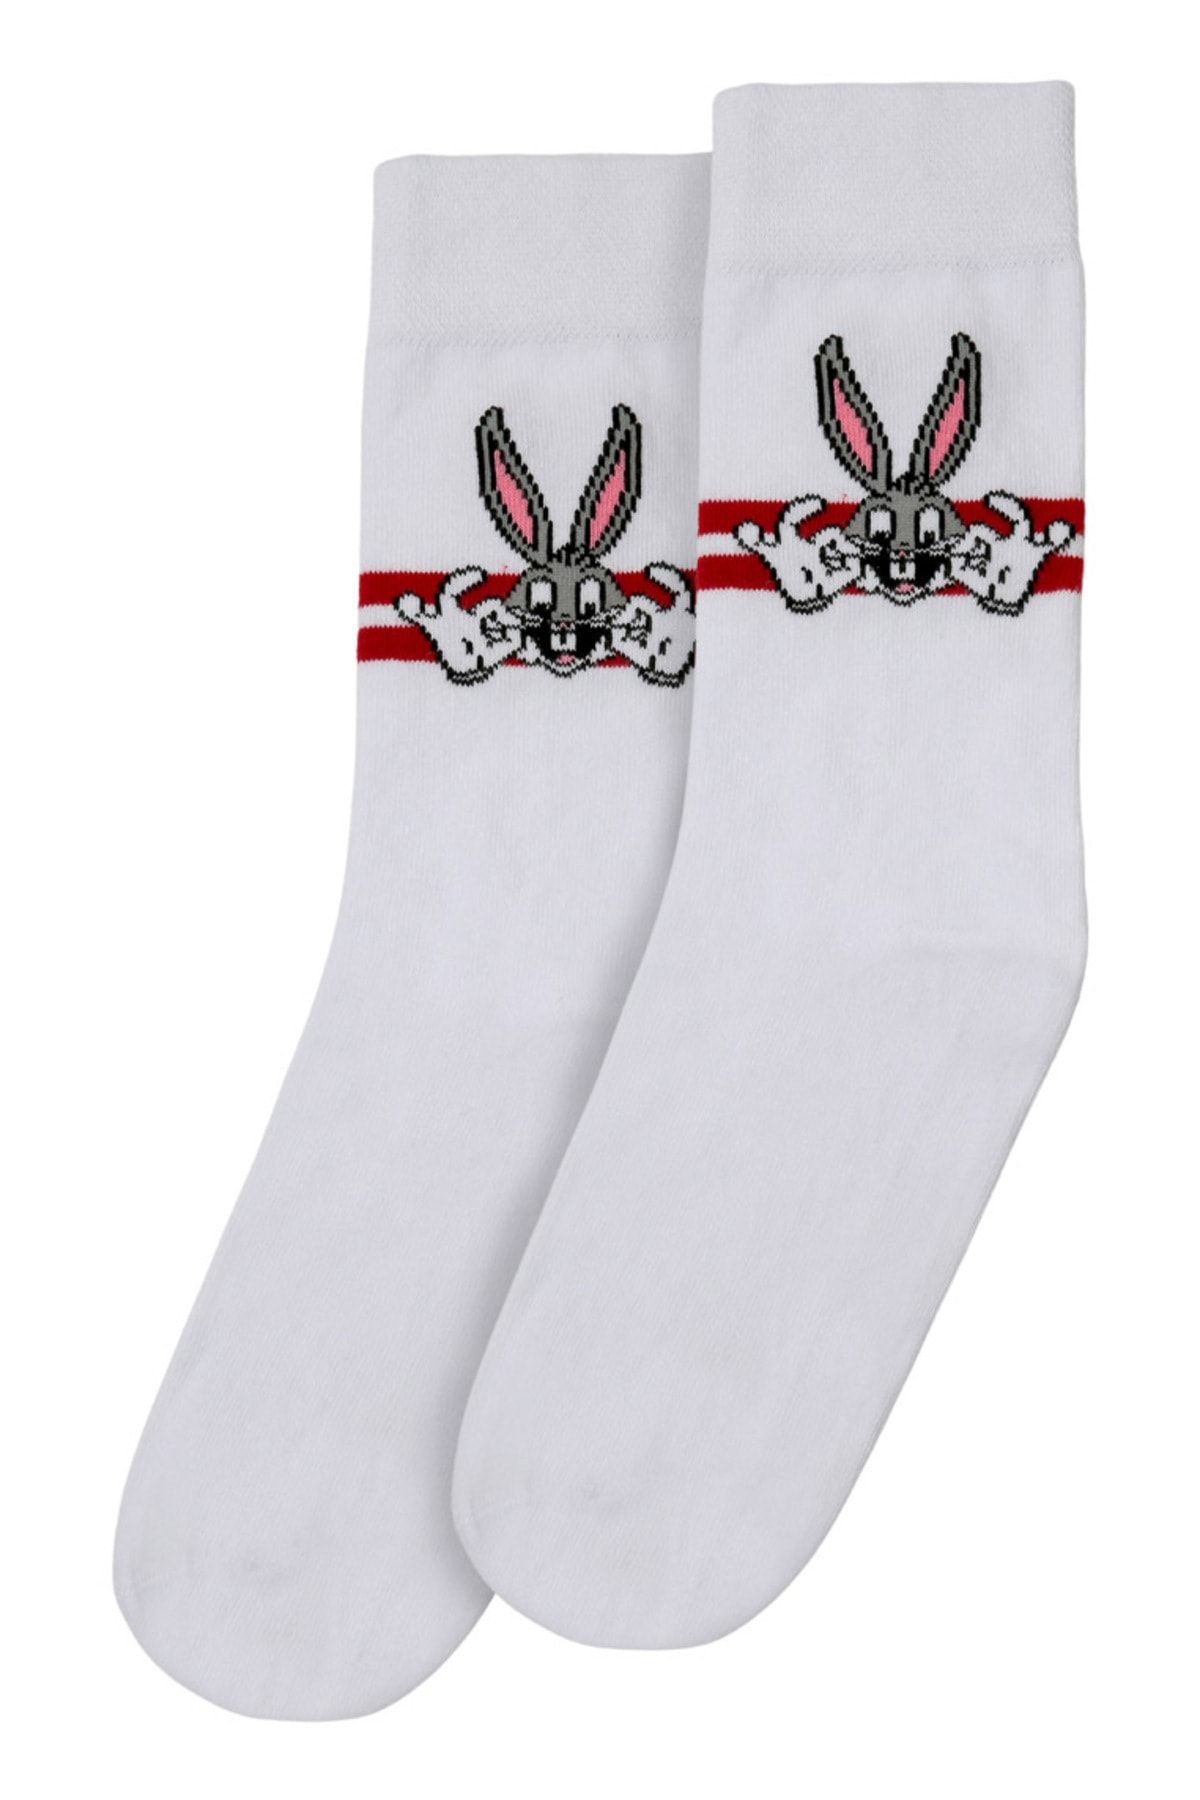 Dogo Unisex Vegan Beyaz Çorap - Warner Bros Bugs Bunny Stripes Tasarım